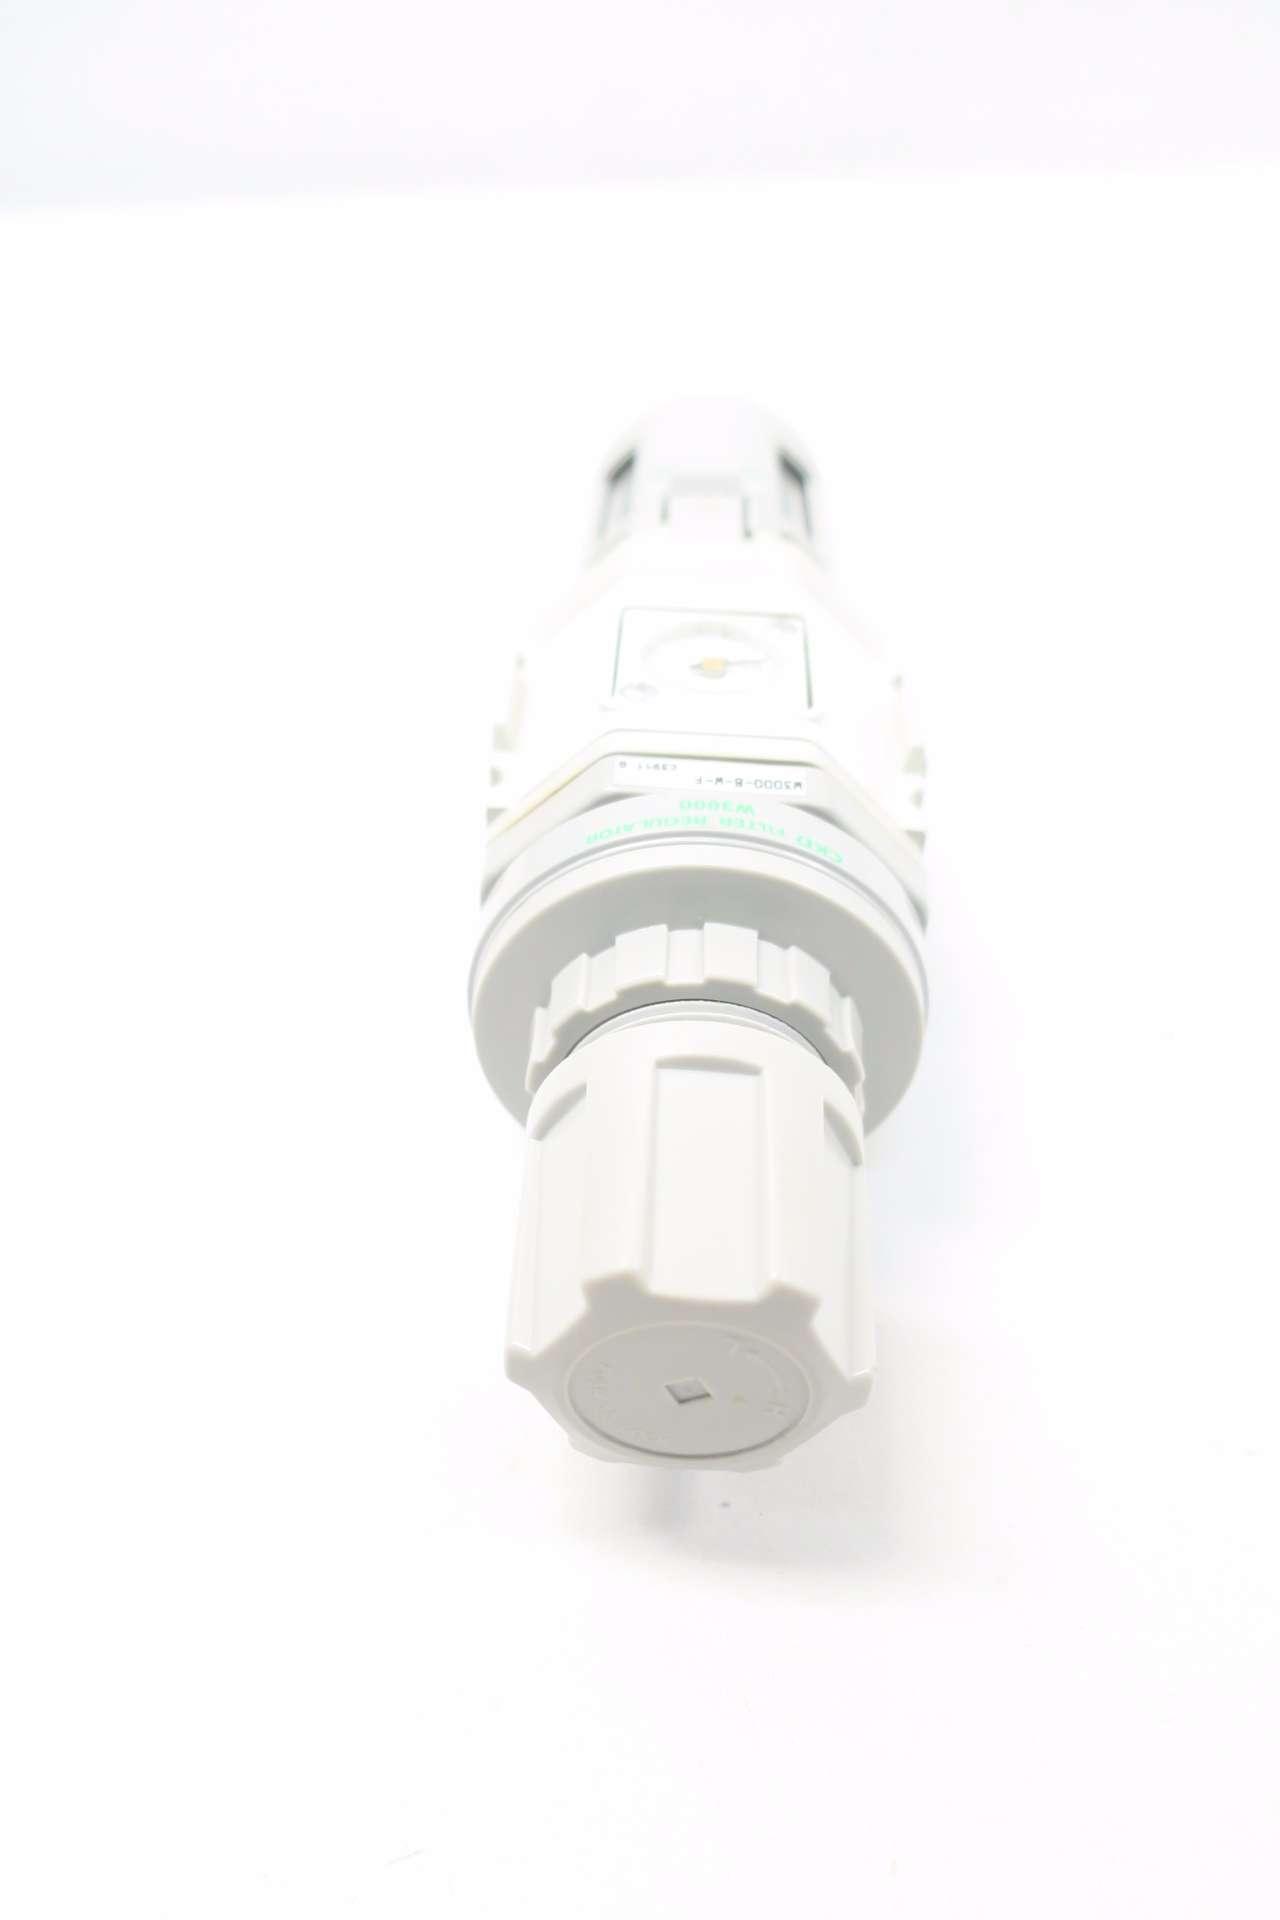 ゲンテン公式 CKD フィルタレギュレータ 白色シリーズ W4000-8N-W